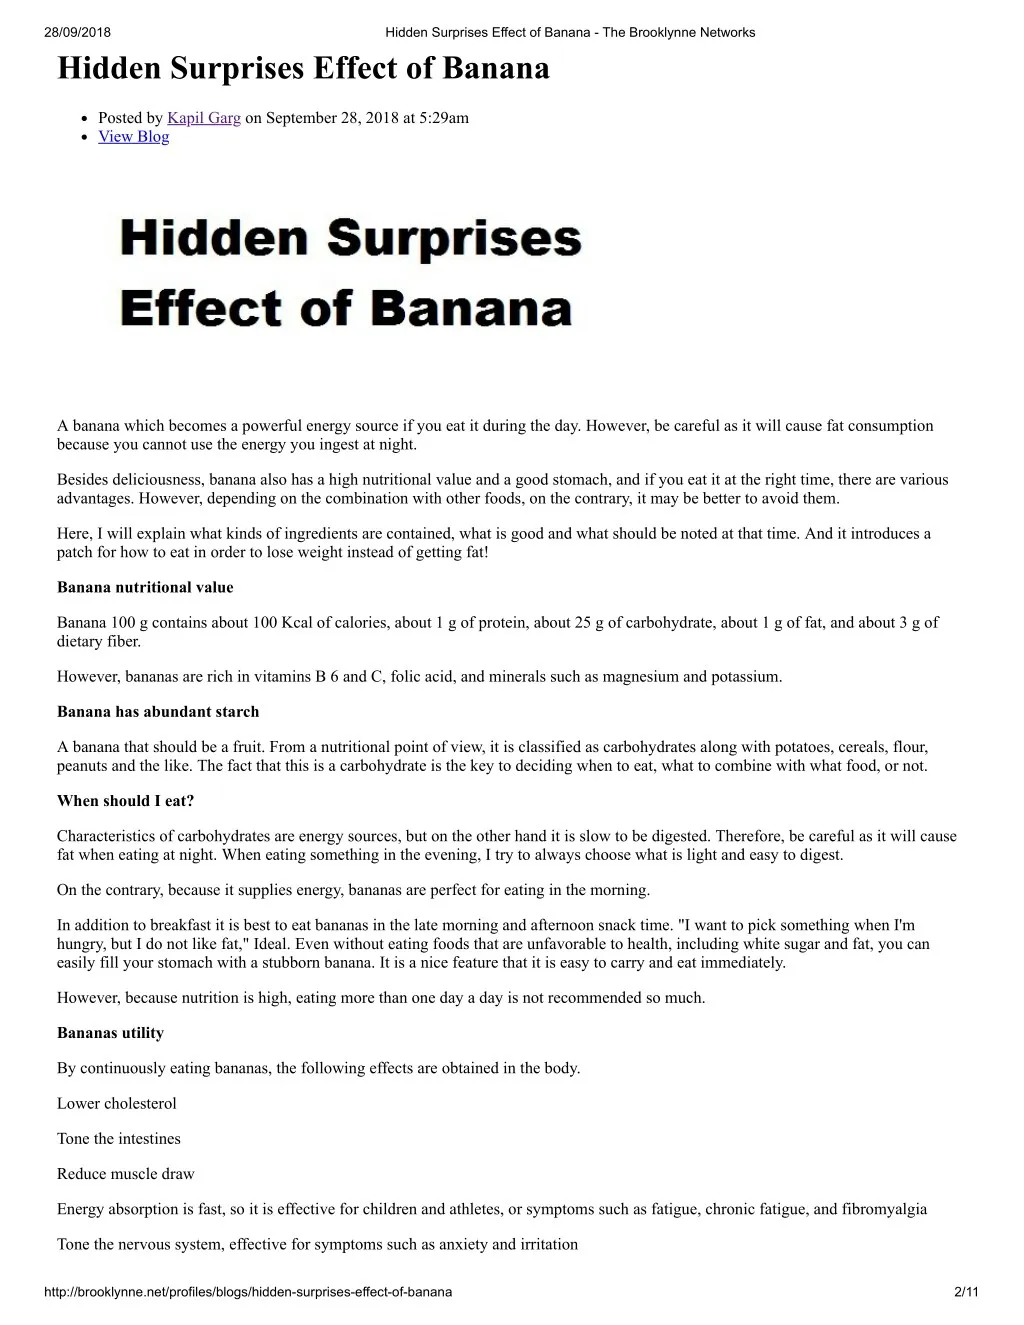 28 09 2018 hidden surprises effect of banana